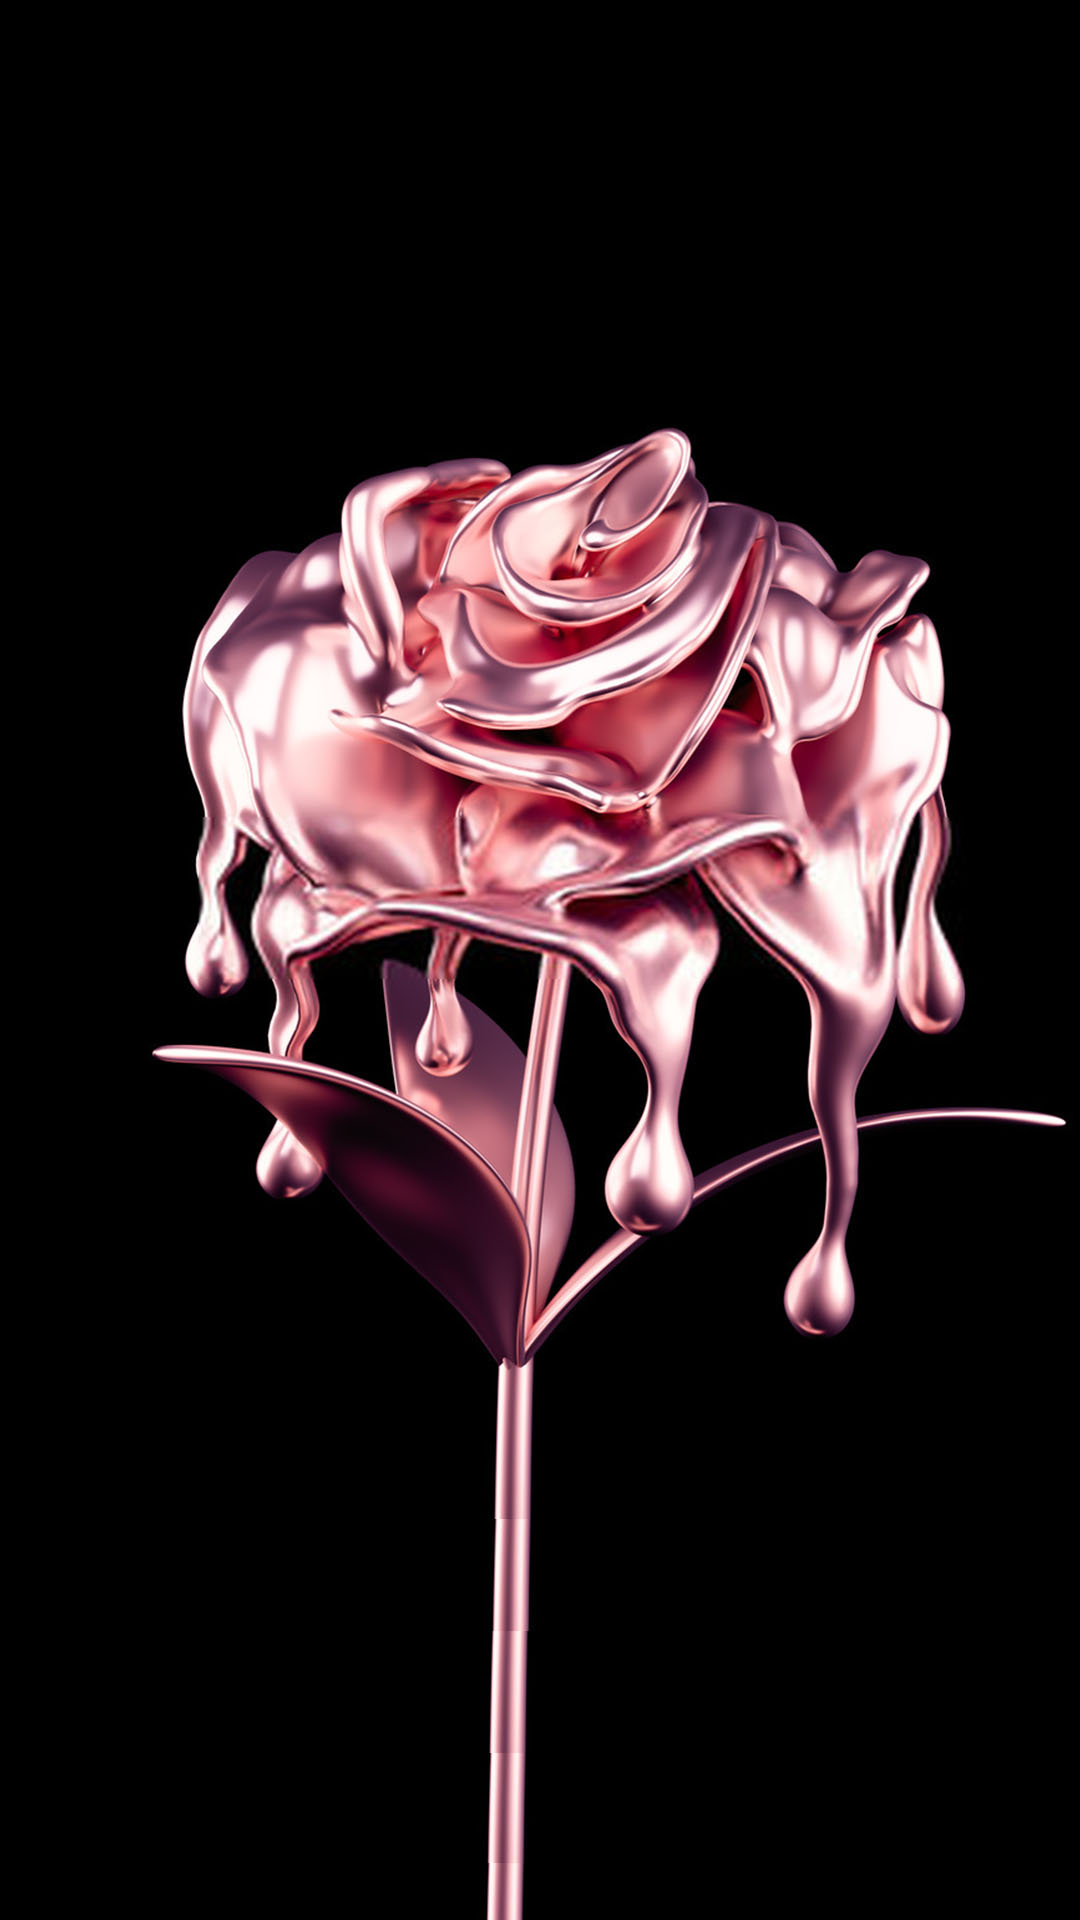 Hình nền về hoa hồng 3D